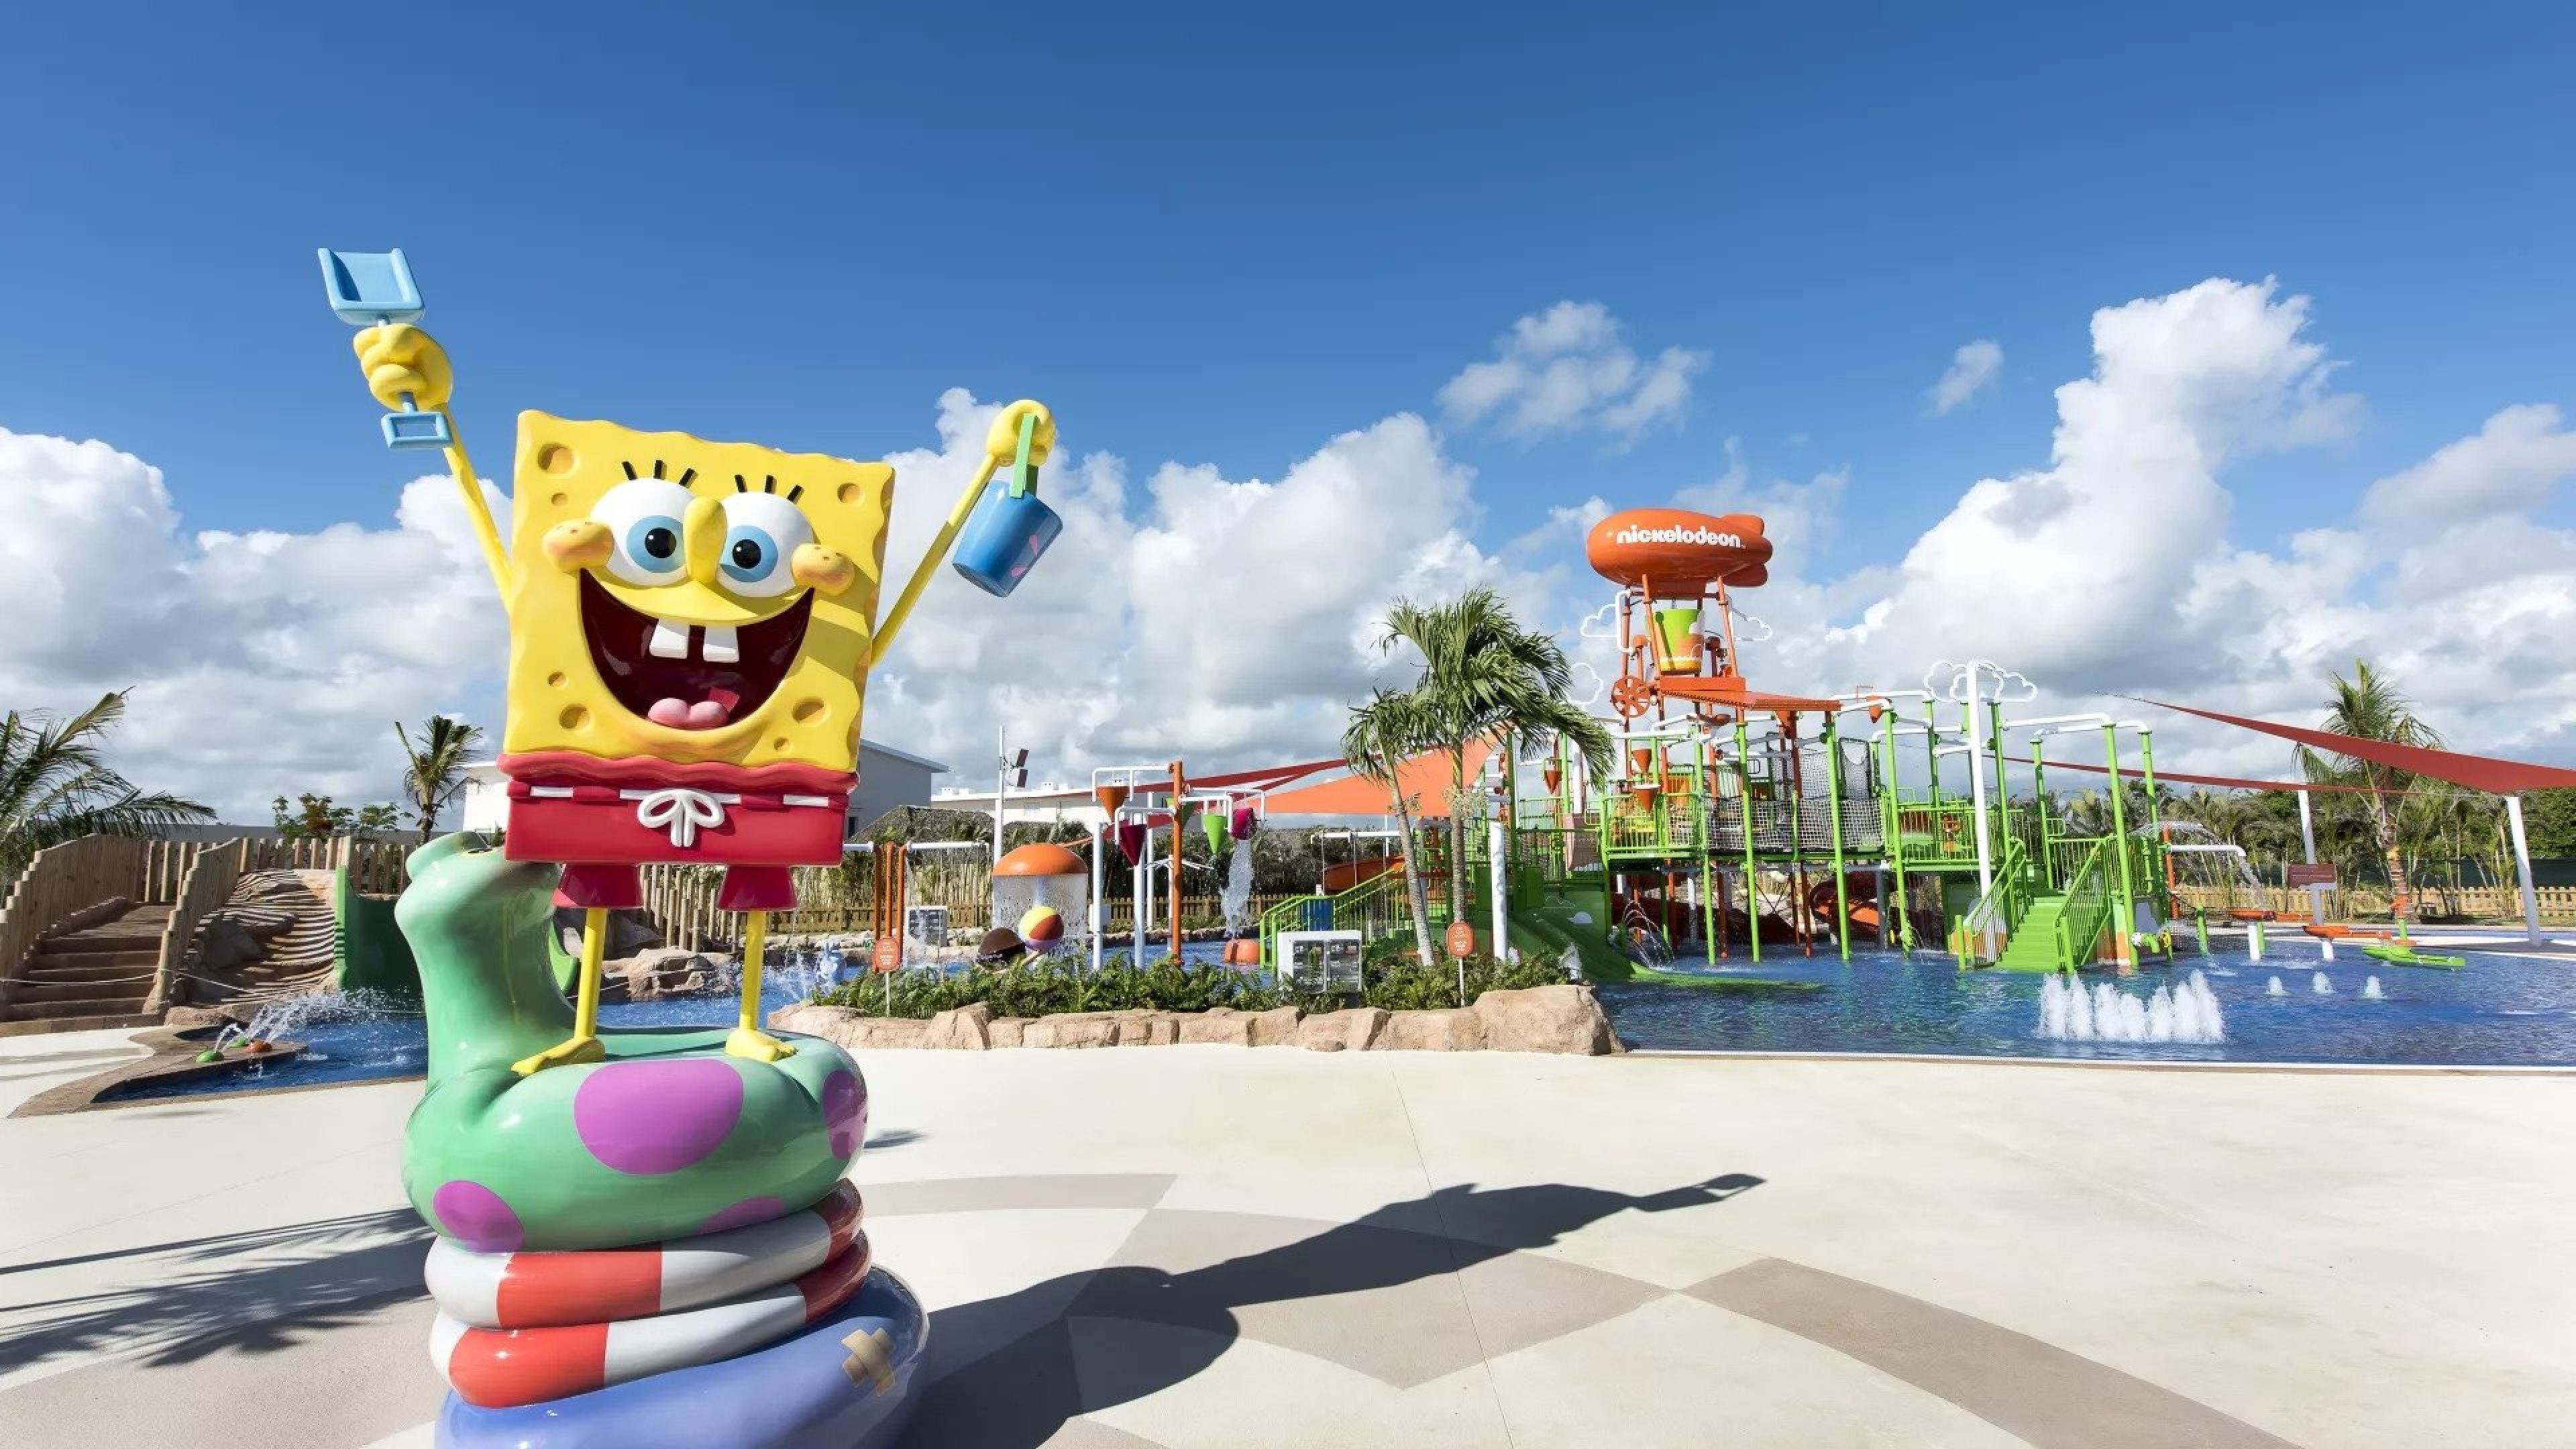 Spongebob Squarepants statue at a waterpark